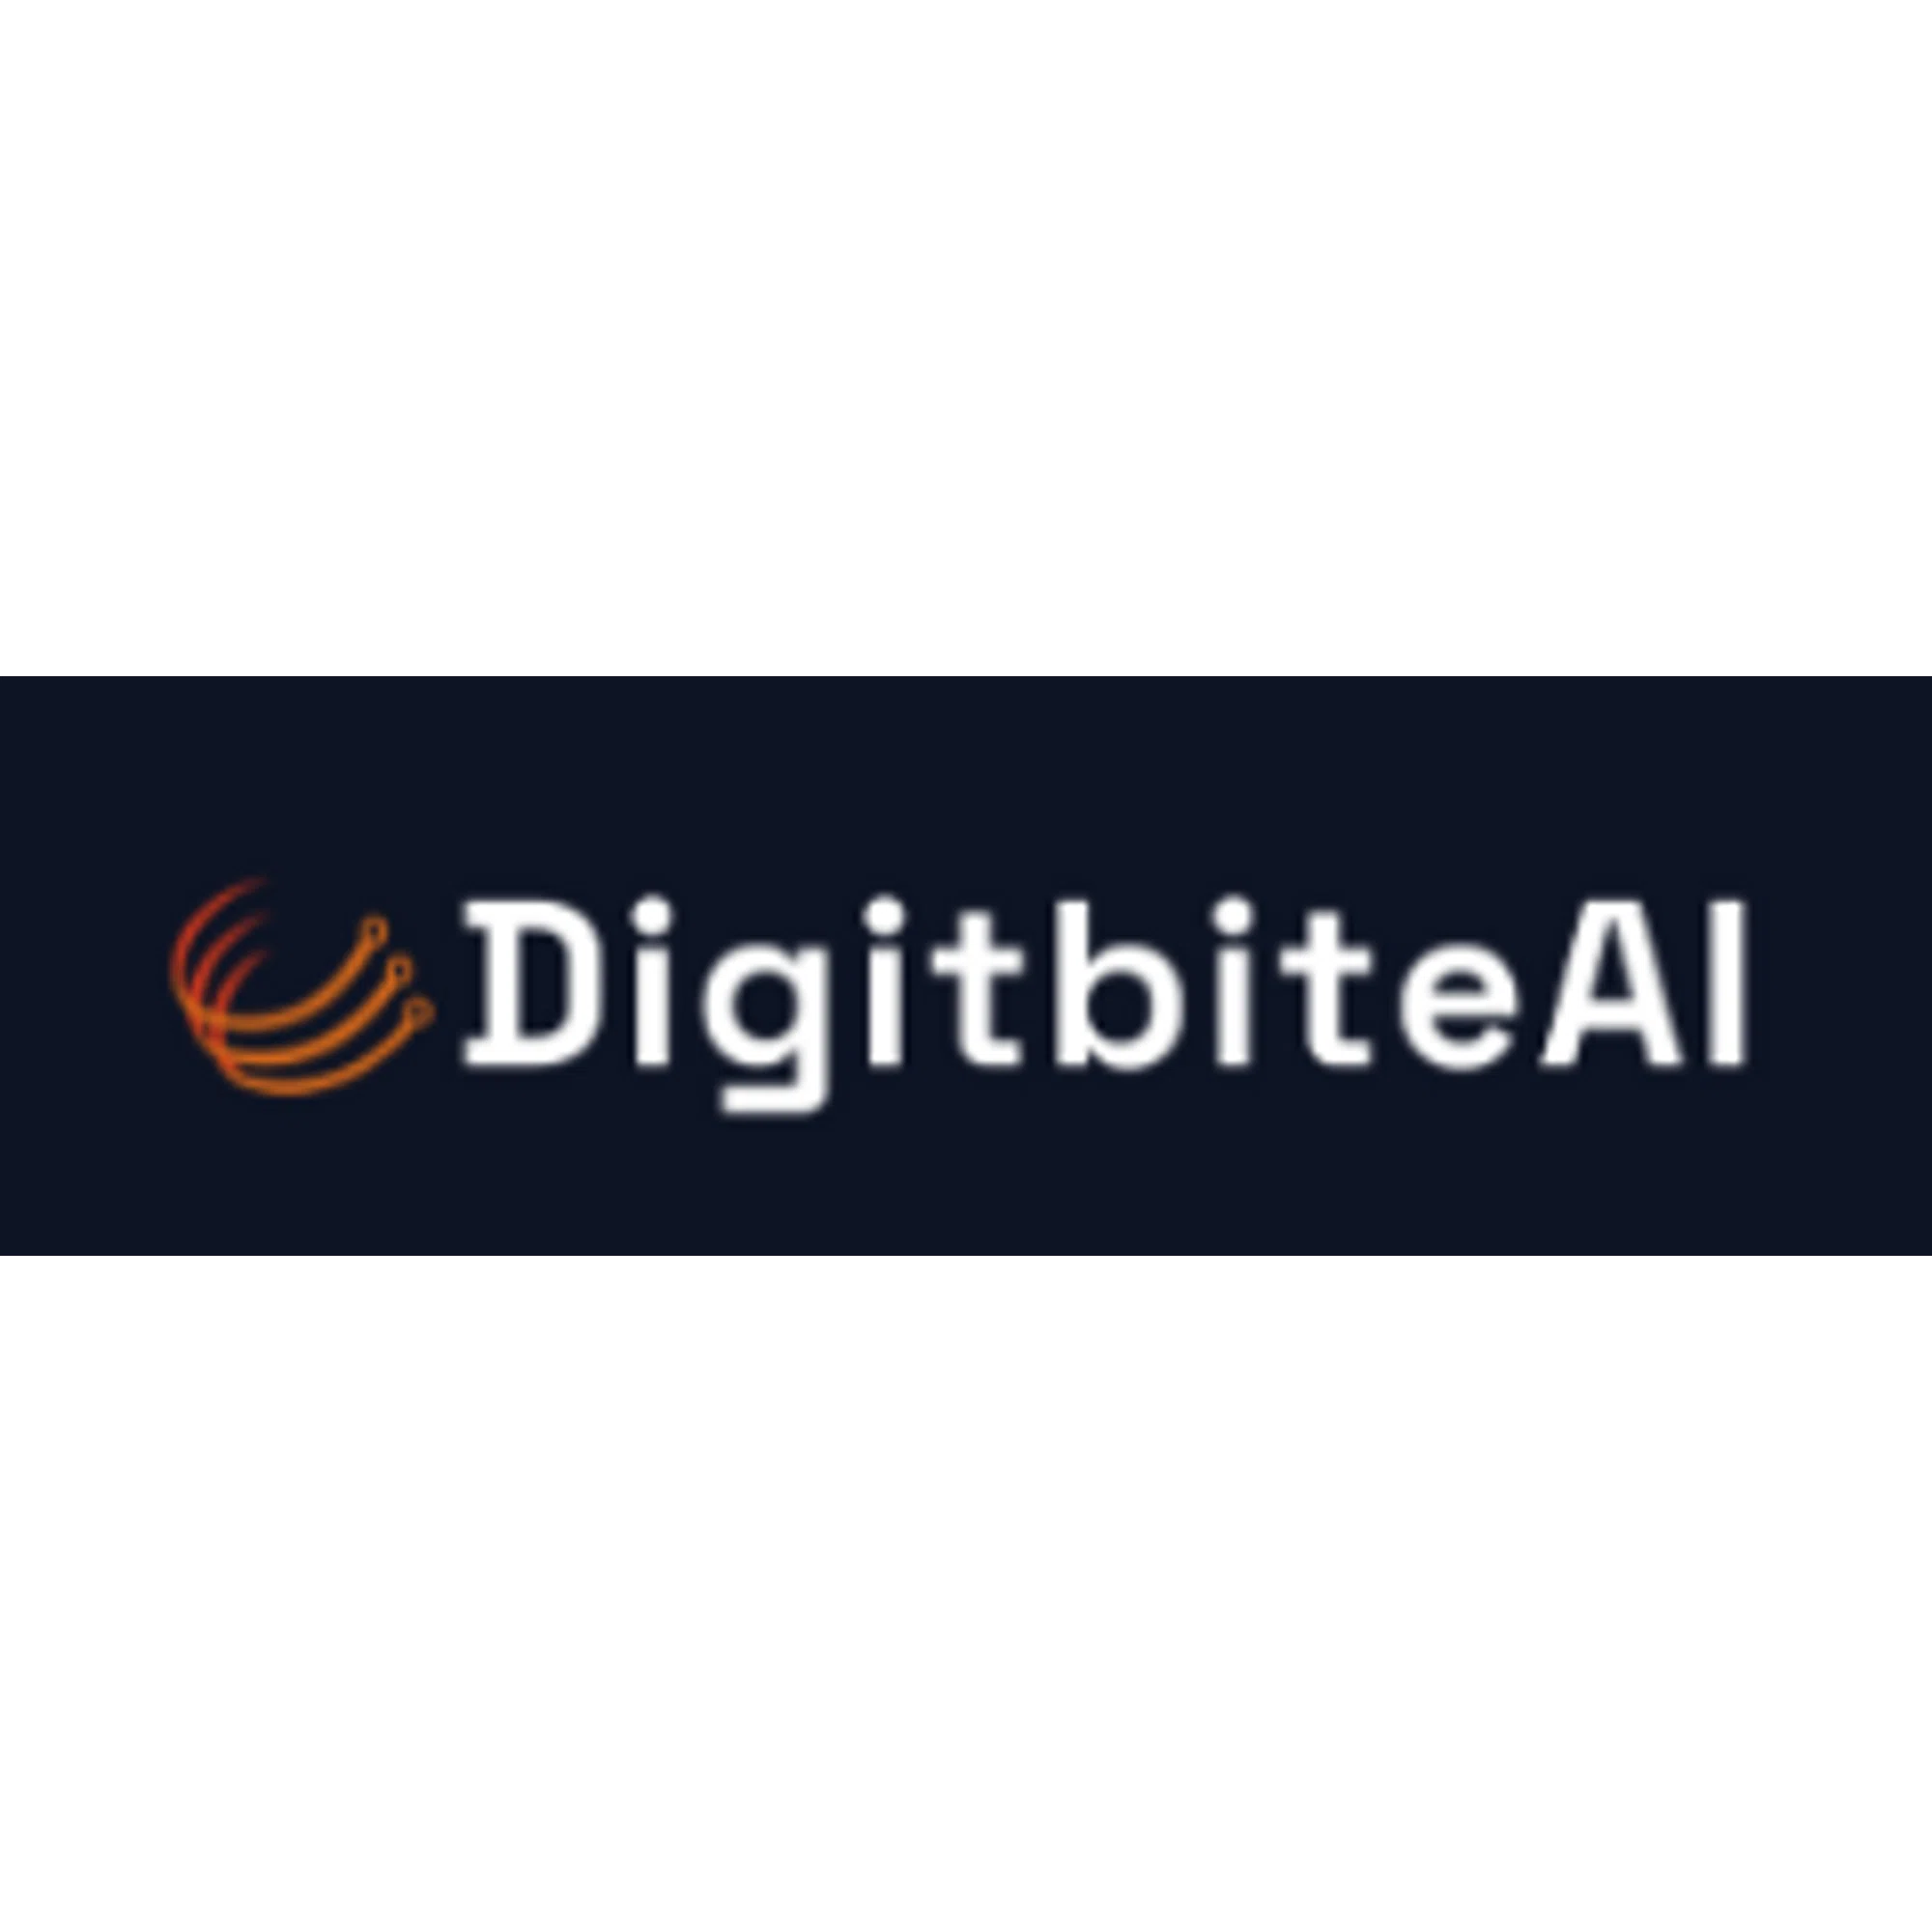 digitbiteai.com logo